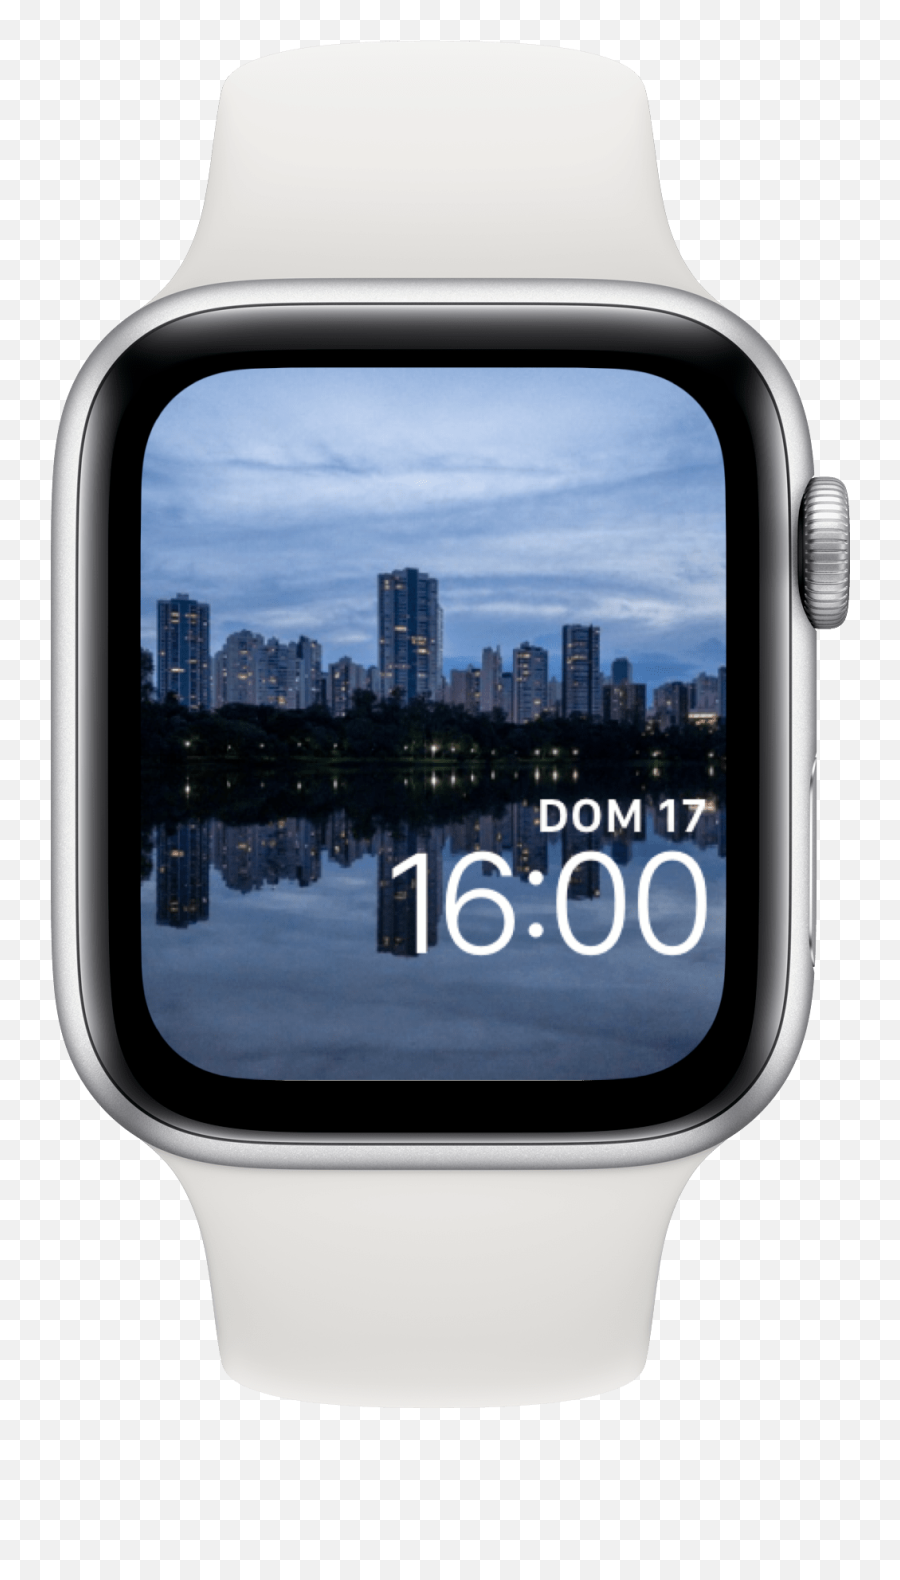 Dicas Para Ios U2013 Ihelp Br - Apple Watch Emoji,New Ios Emojis 11.4.1